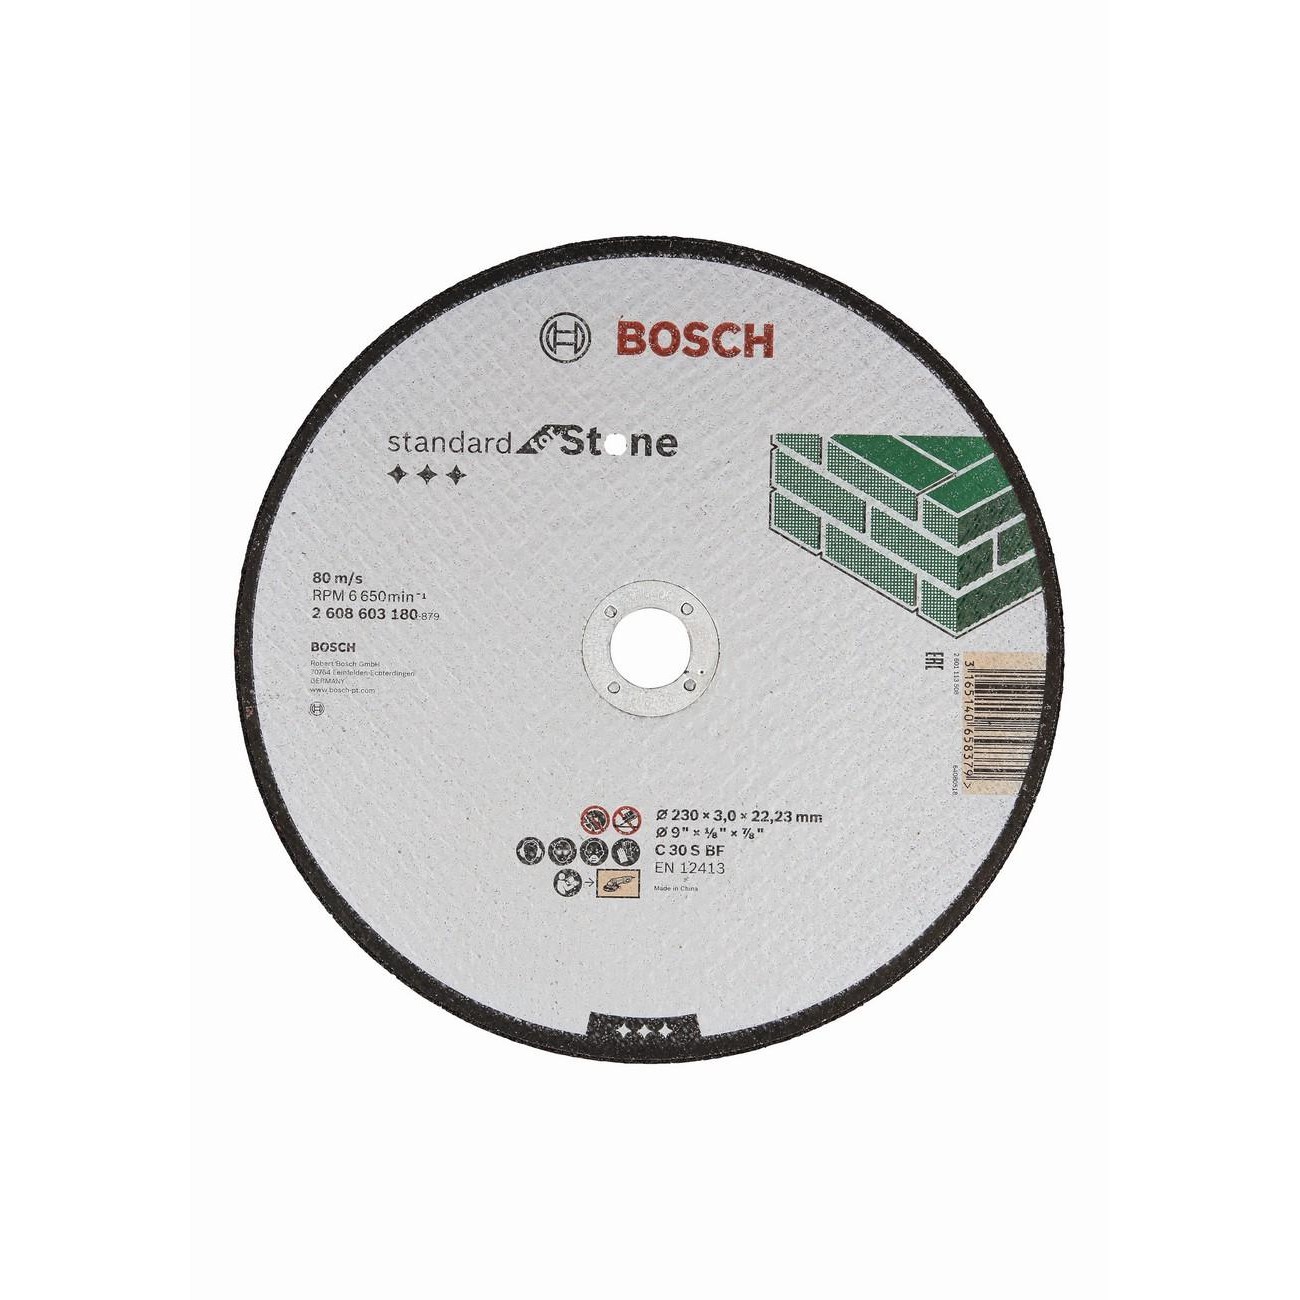 BOSCH Professional C 30 S BF Диск за рязане на метал 230 мм 22.23 мм 3 мм (2608603180)